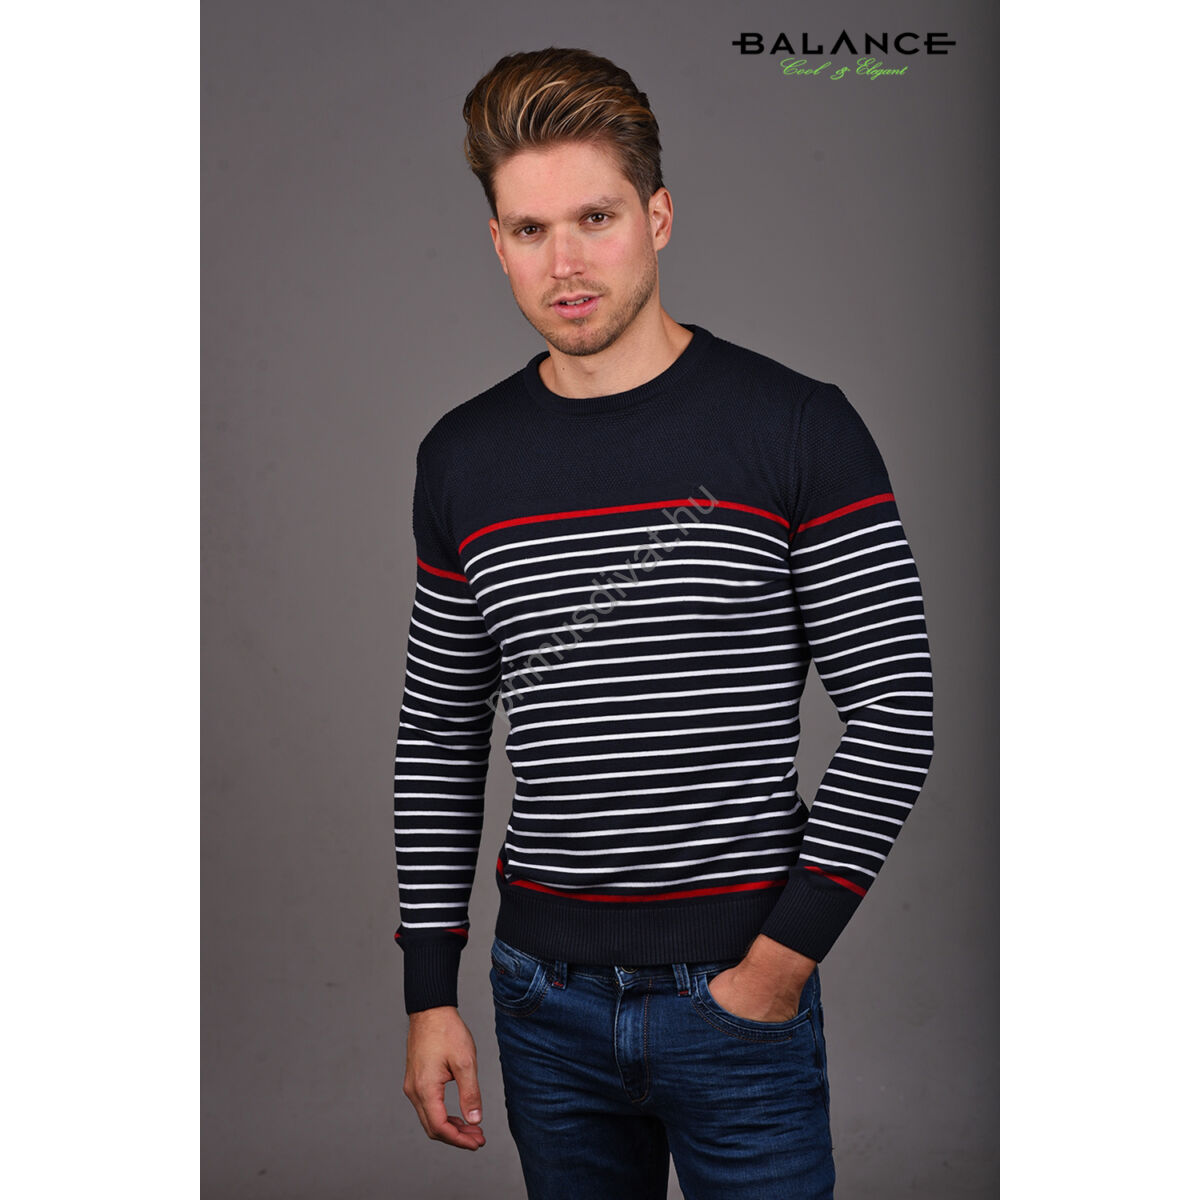 Balance környakas, fehér-piros csíkos sötétkék vékony kötött pamut Mattoni pulóver